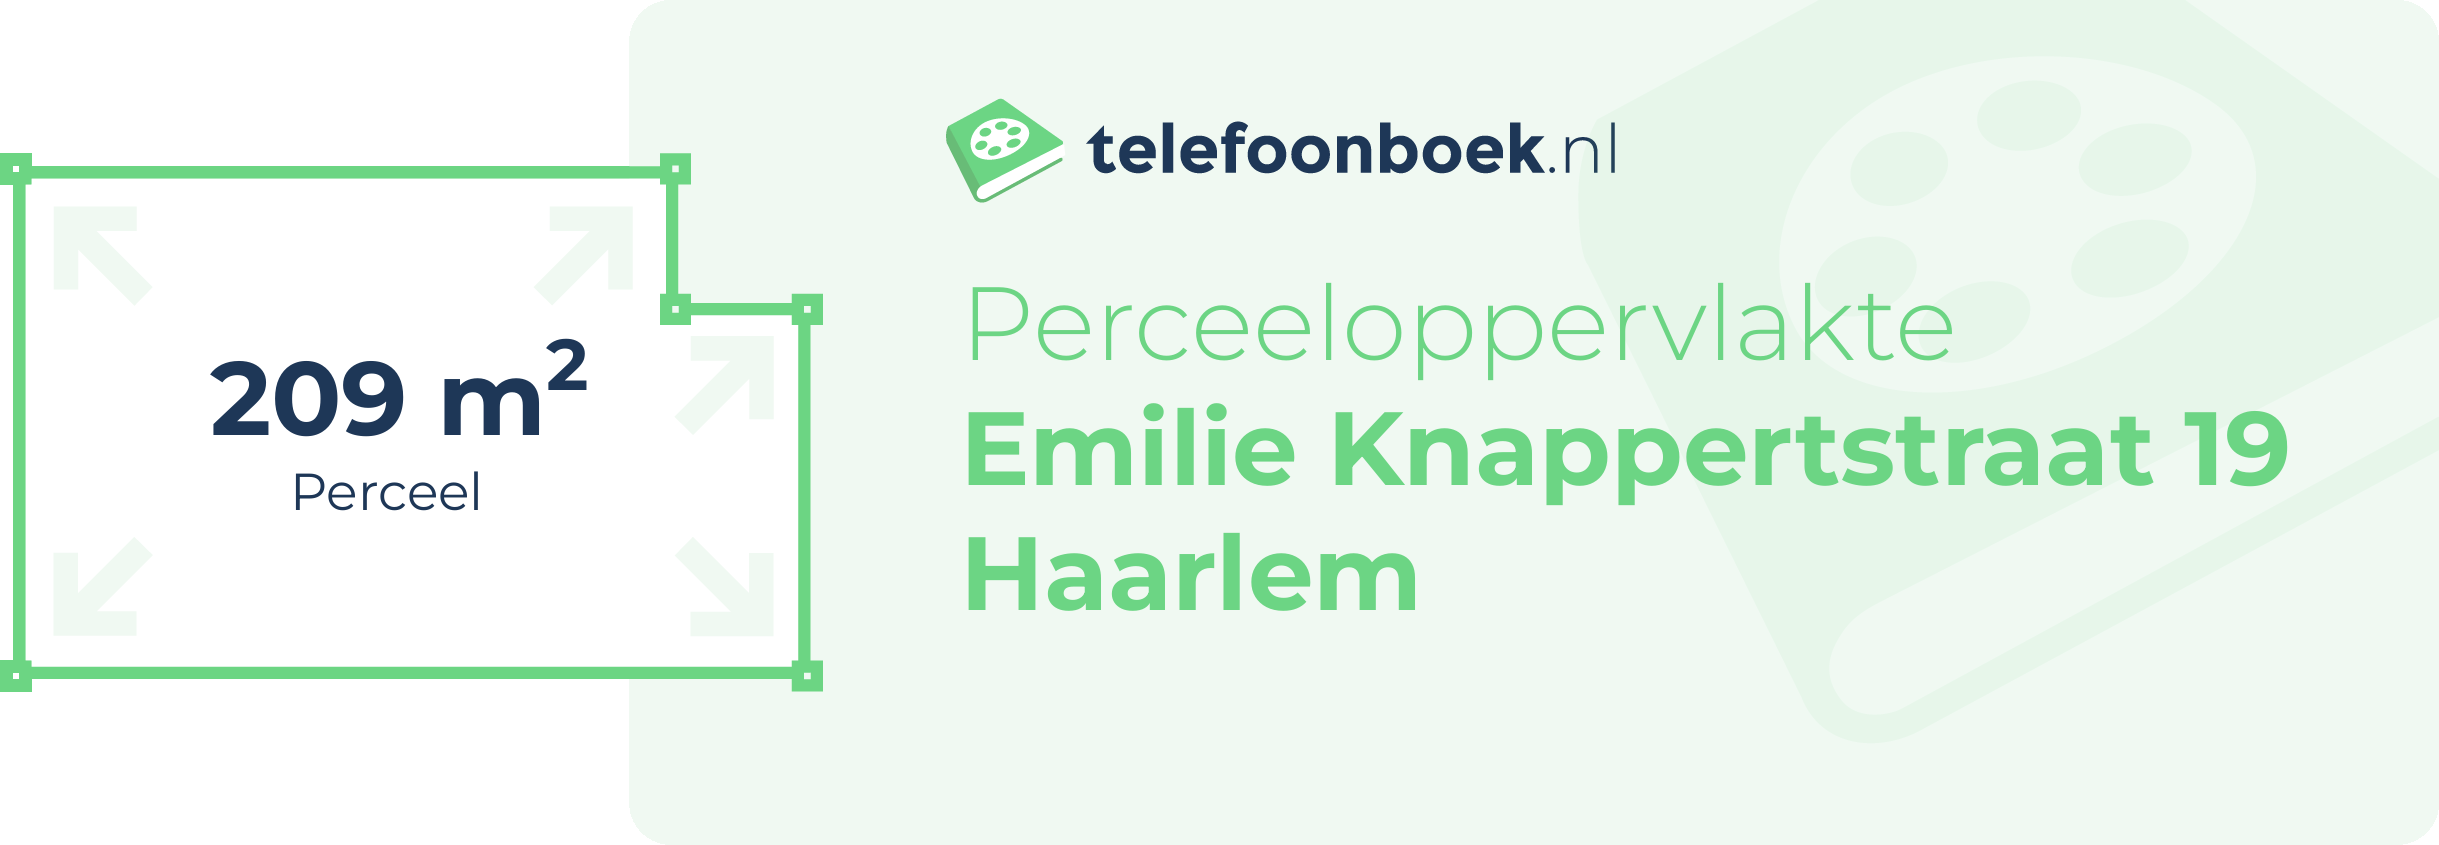 Perceeloppervlakte Emilie Knappertstraat 19 Haarlem